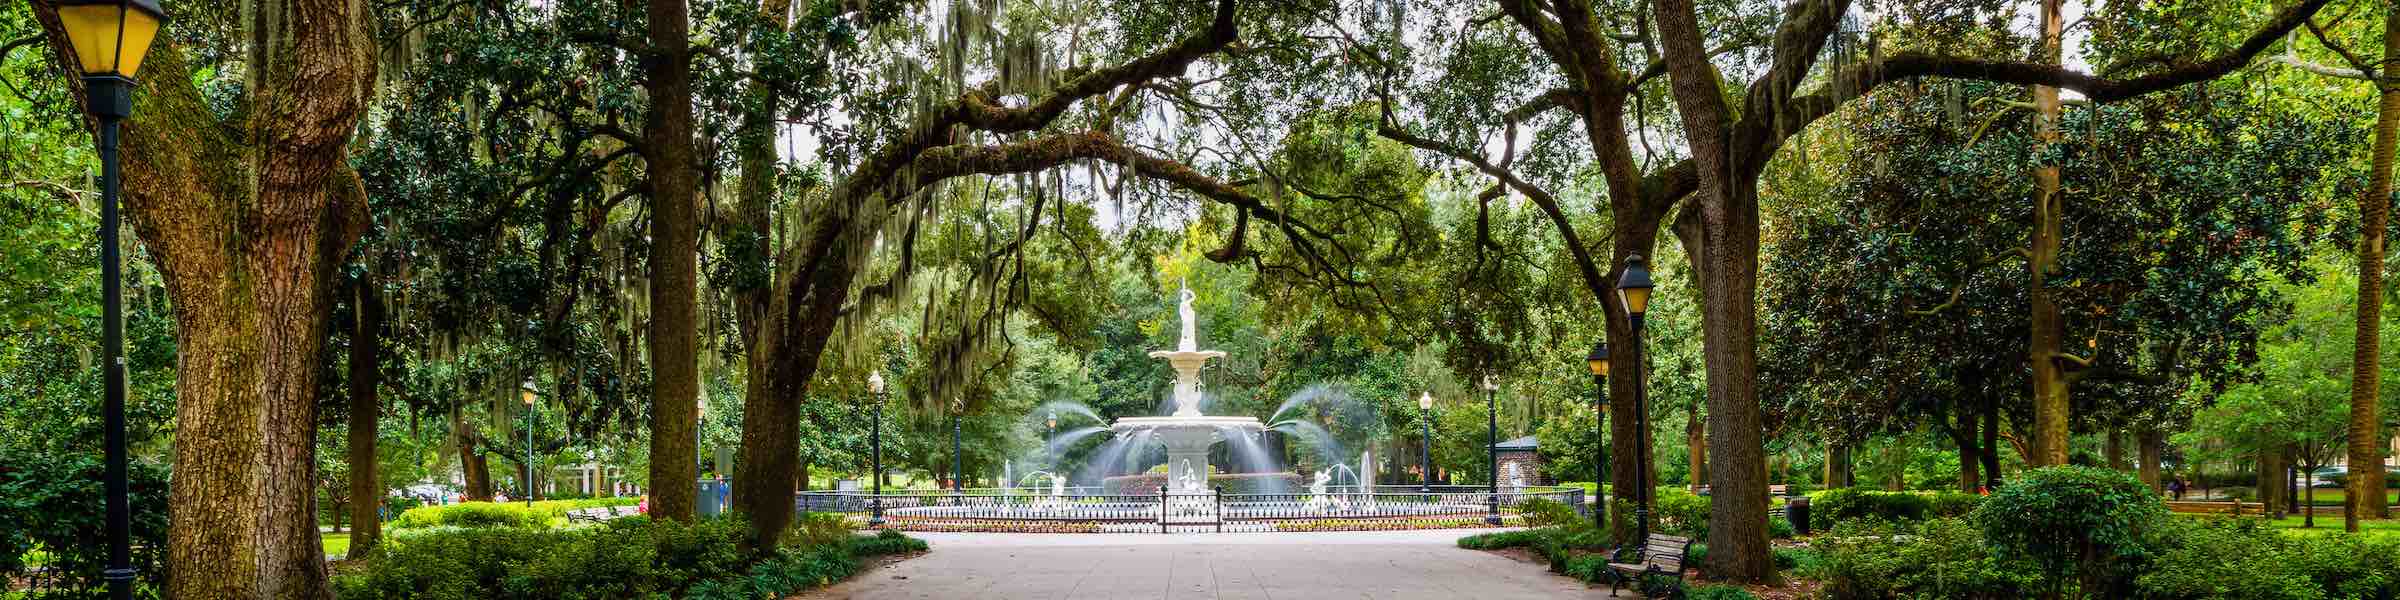 2018 Events In Forsyth Park, Savannah, GA